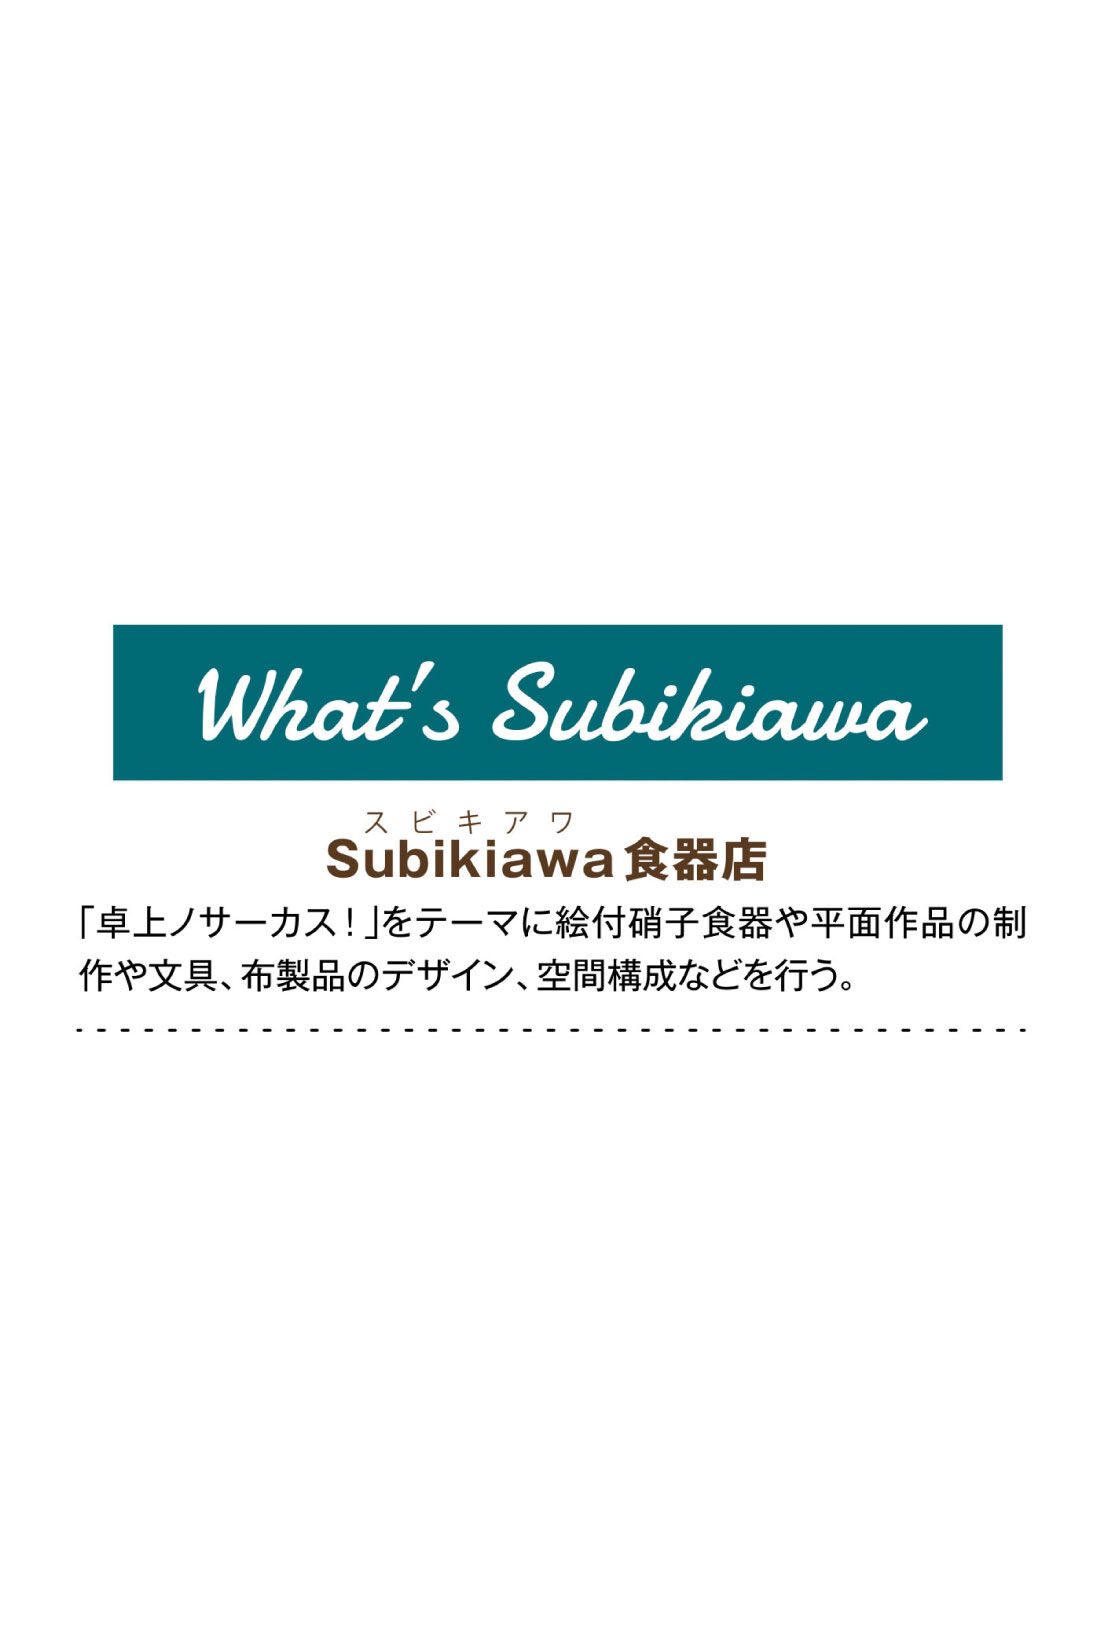 フェリシモMama|Subikiawa食器店さんとつくった クリームソーダ柄の浴衣（ゆかた）